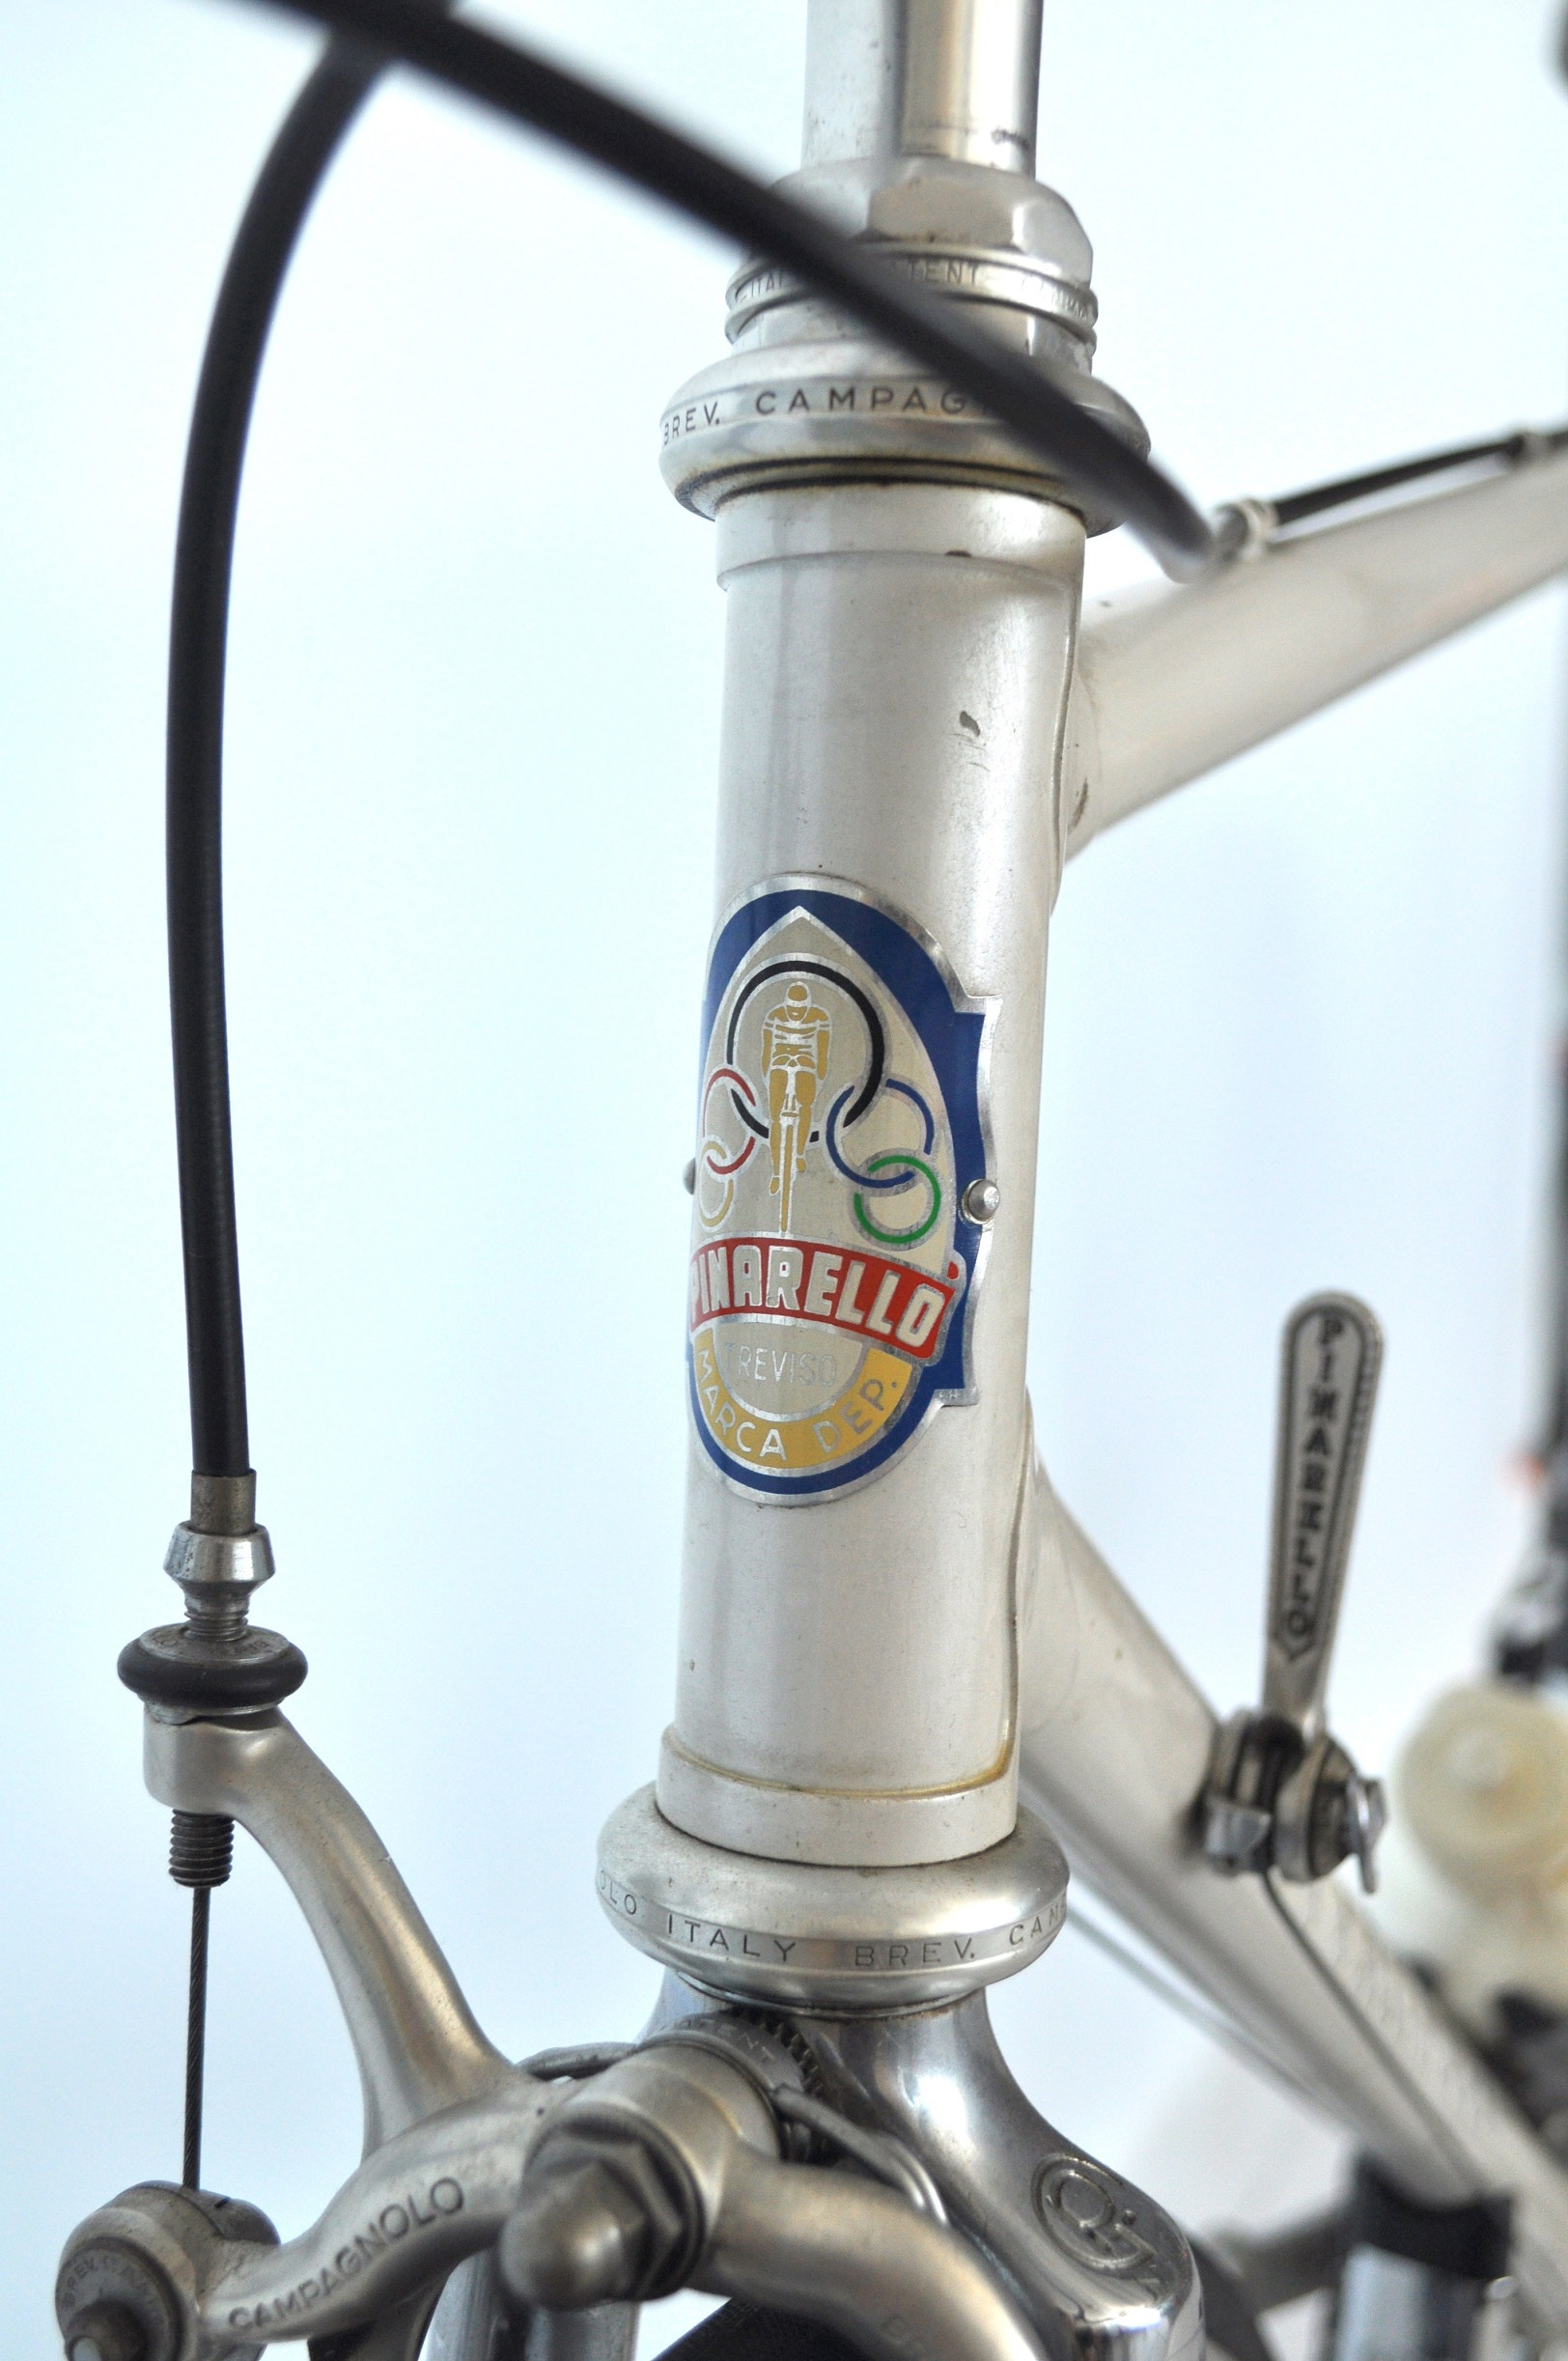 Pinarello, 1983-88, racing bicycle